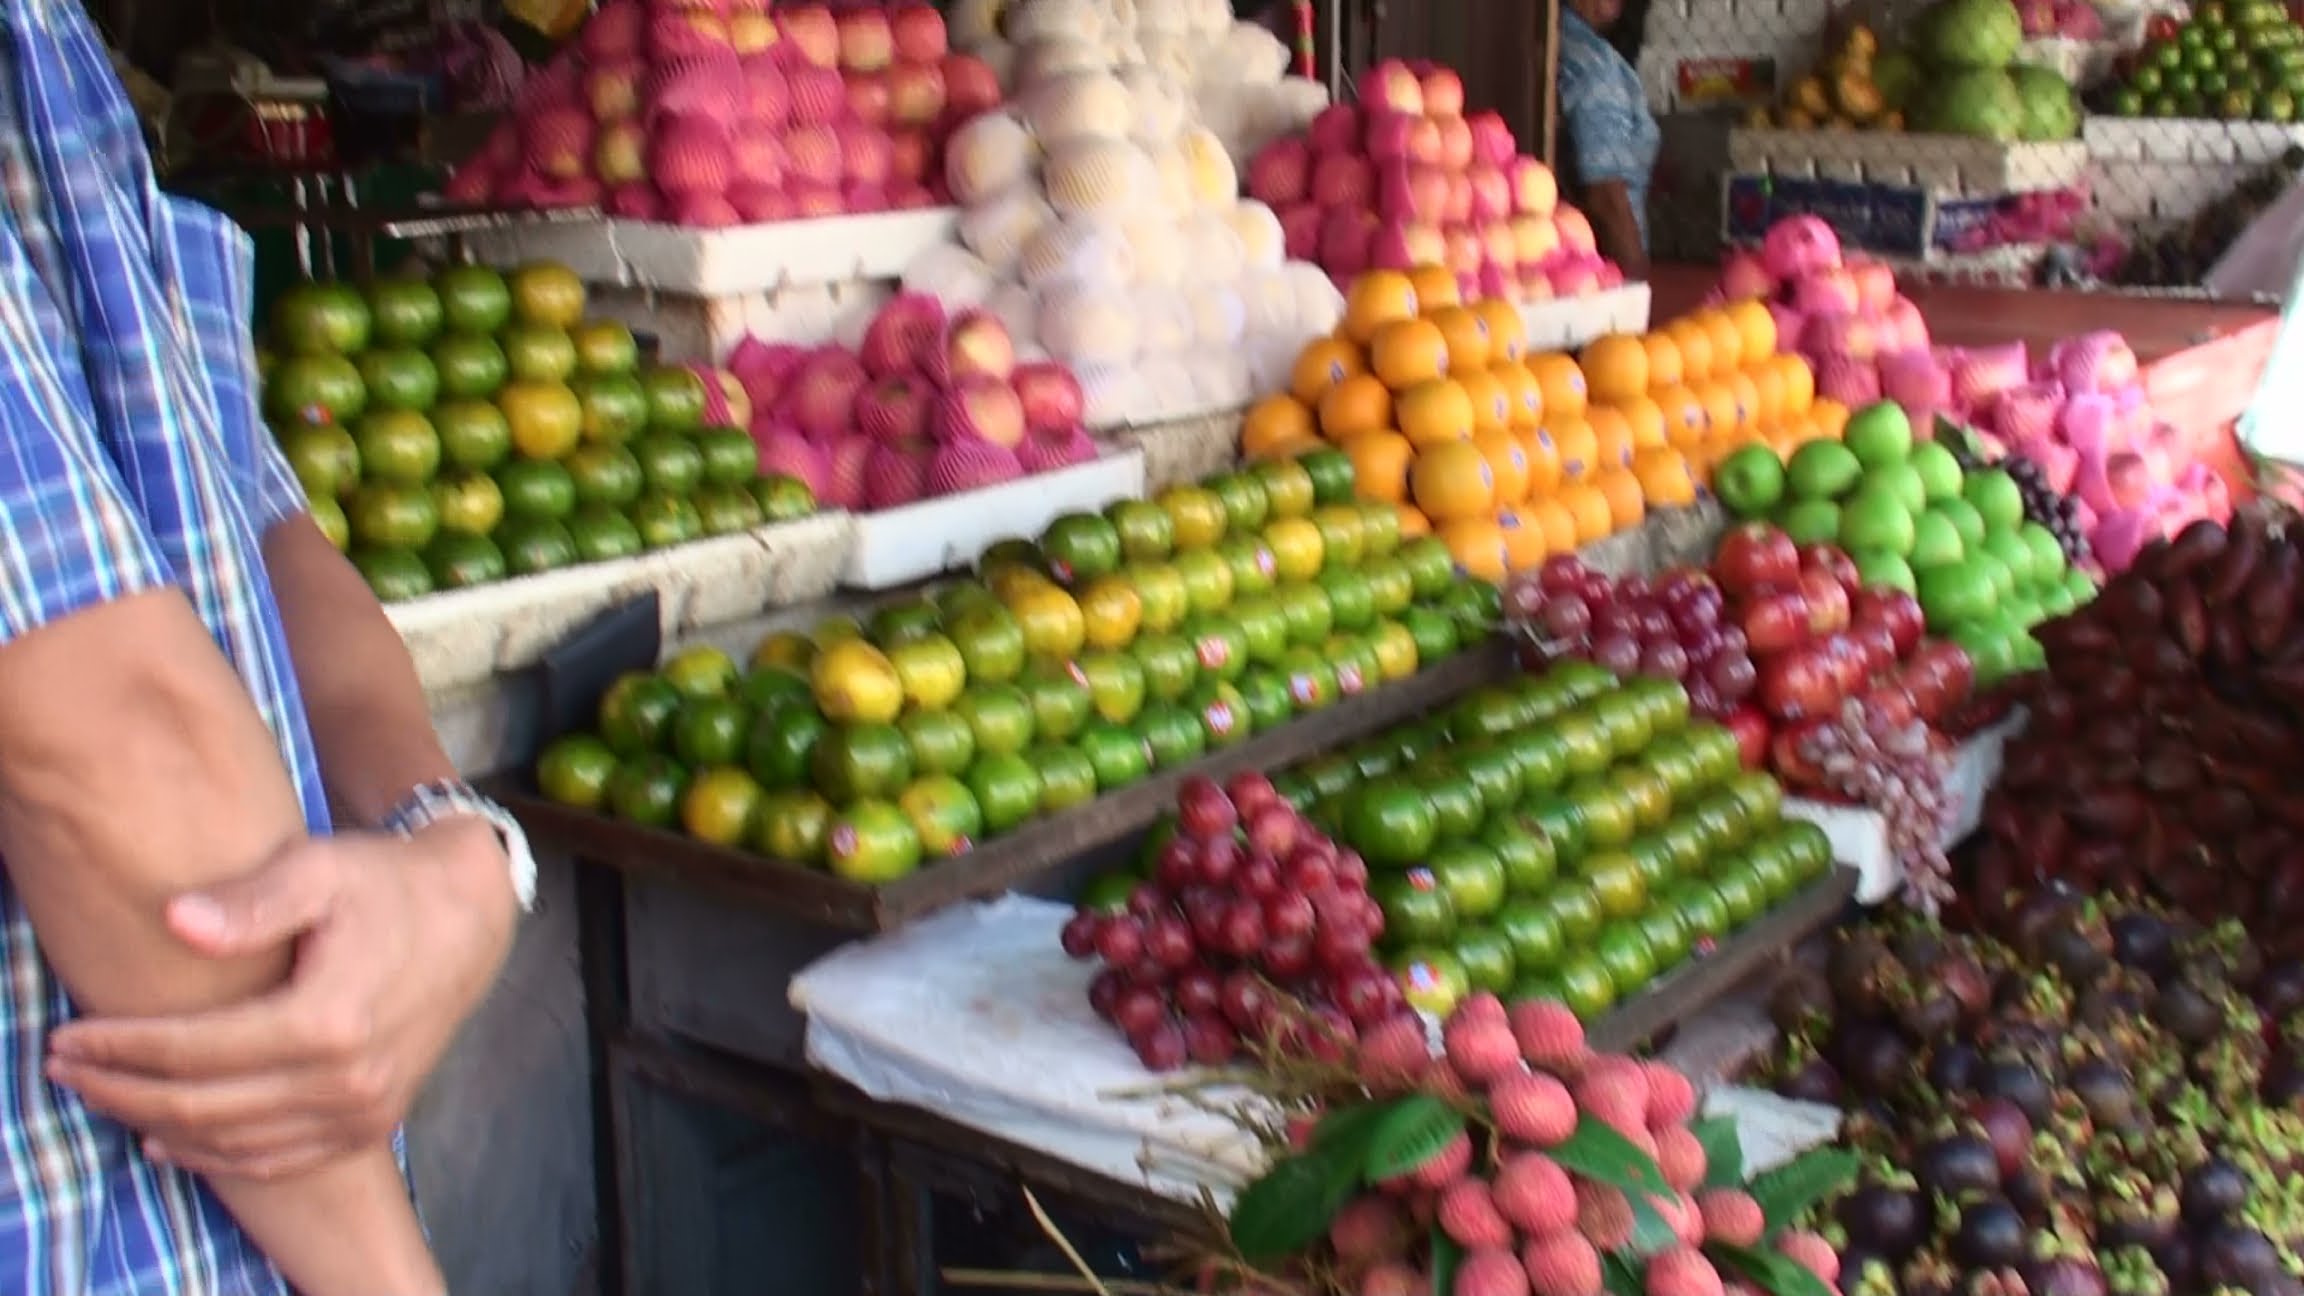 Cambodia Market - Amazing Tropical Fruit - YouTube